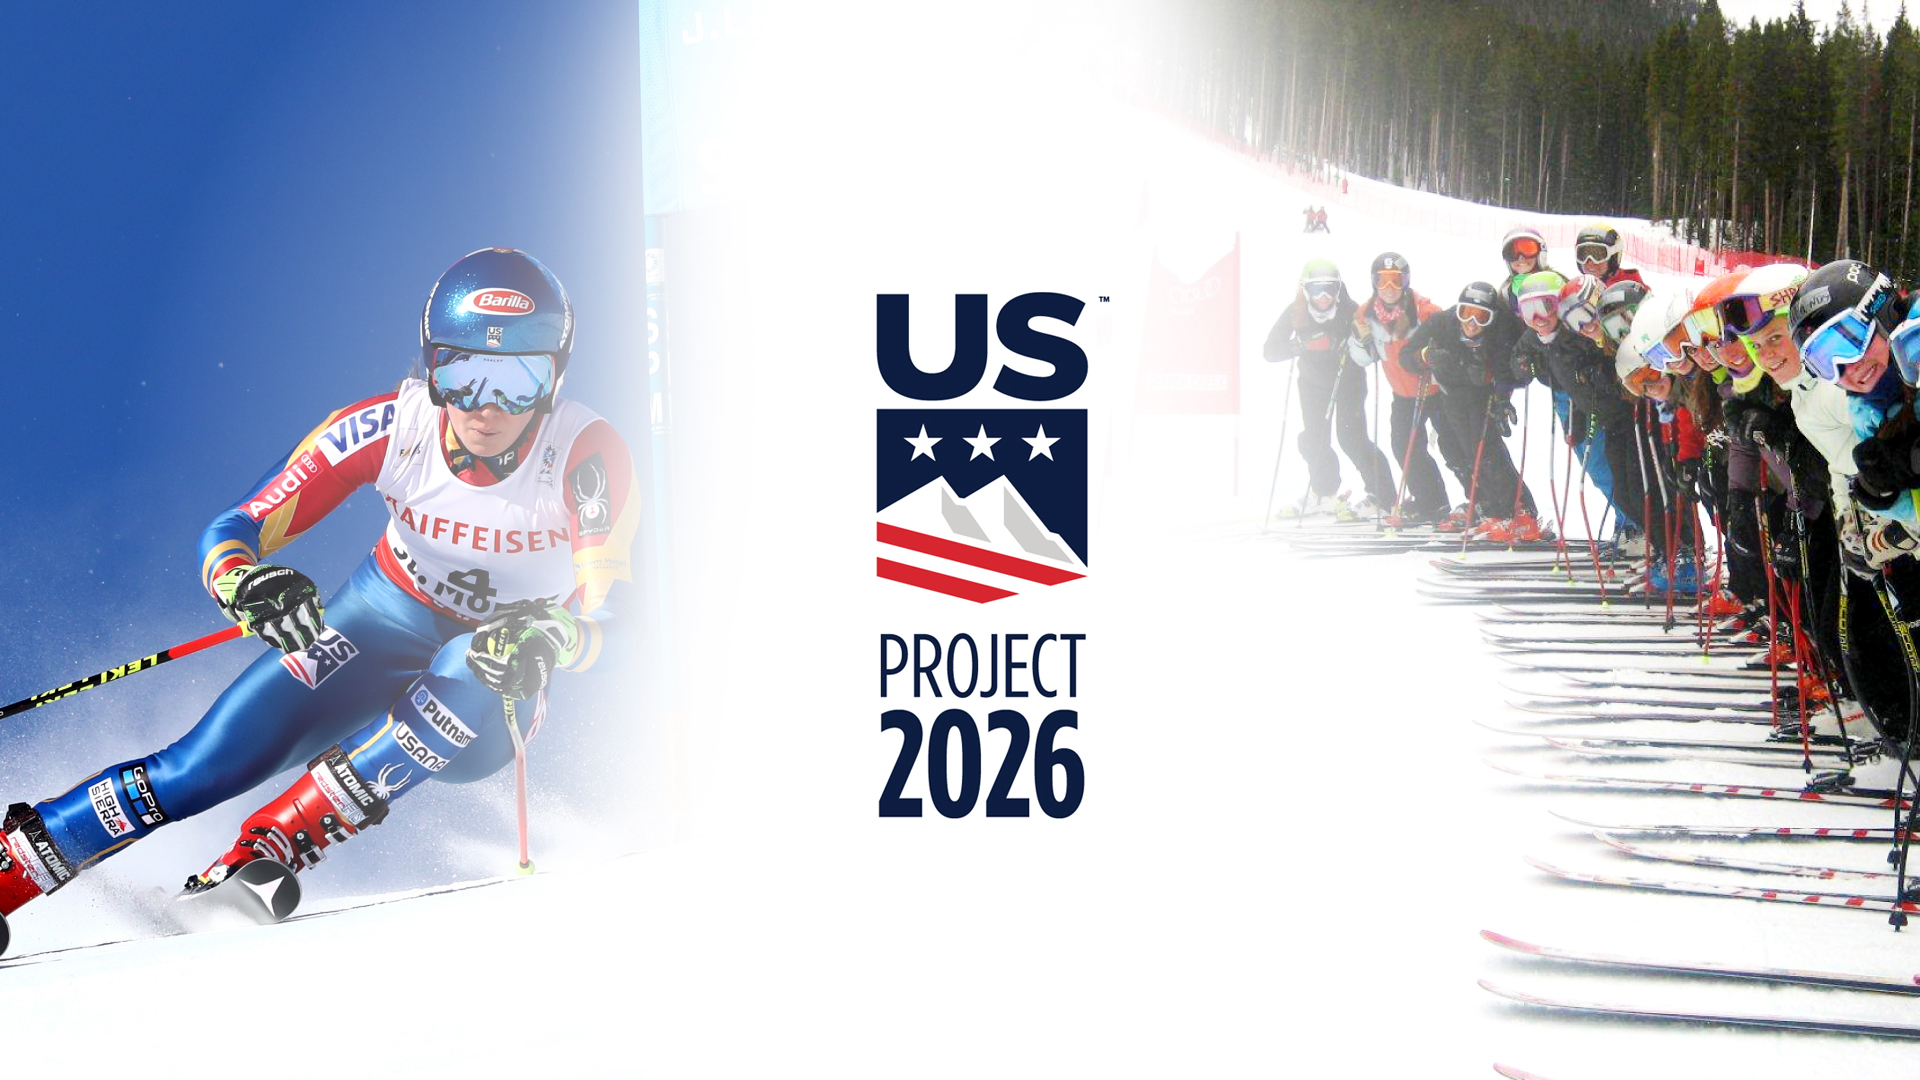 Future Look at Ski Racing Development